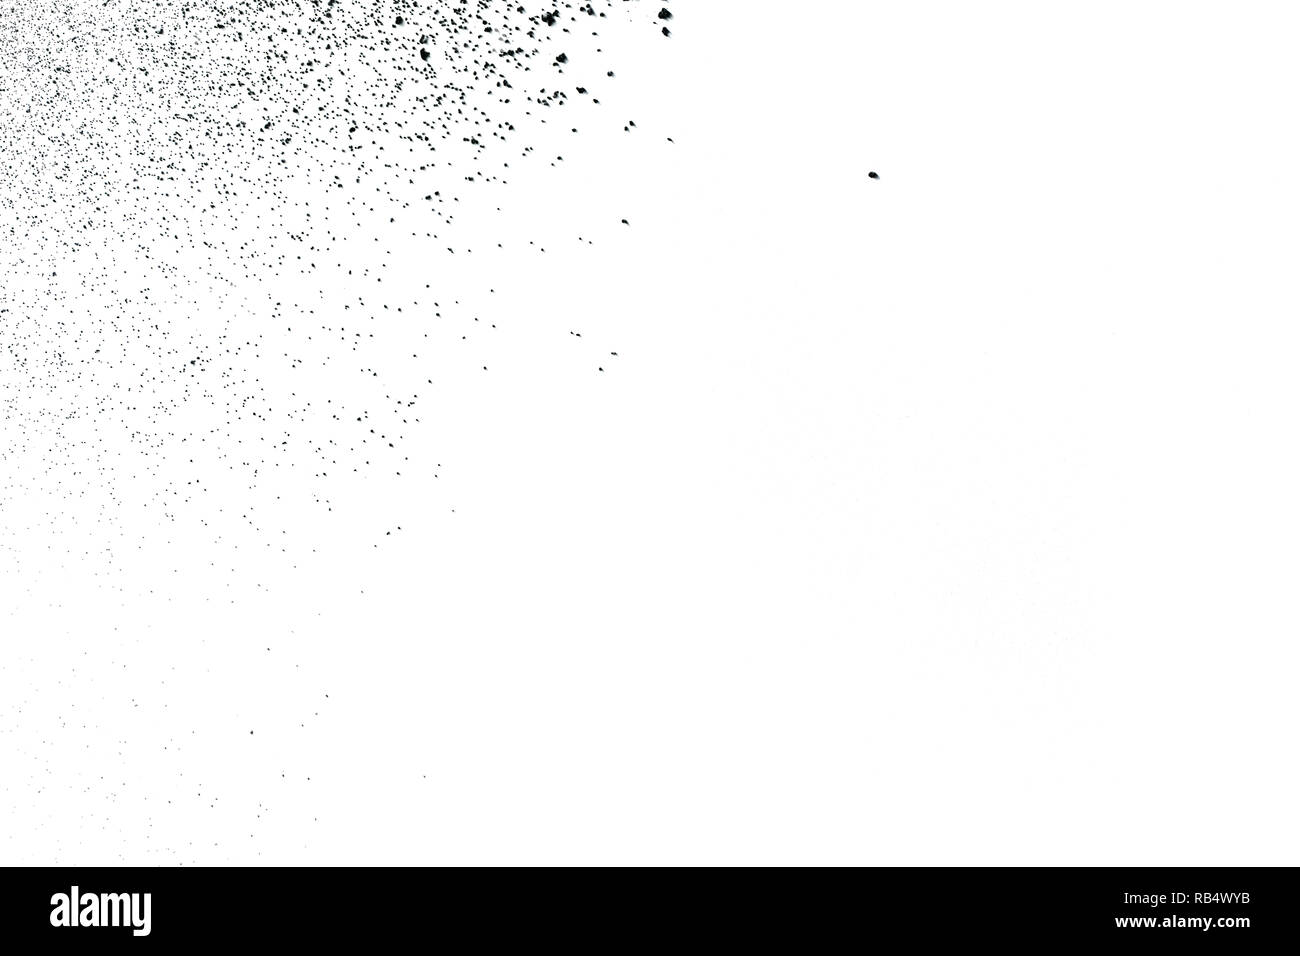 Polvere nera in esplosione contro uno sfondo bianco. Polvere di carbone exhaie di particelle nell'aria. Foto Stock